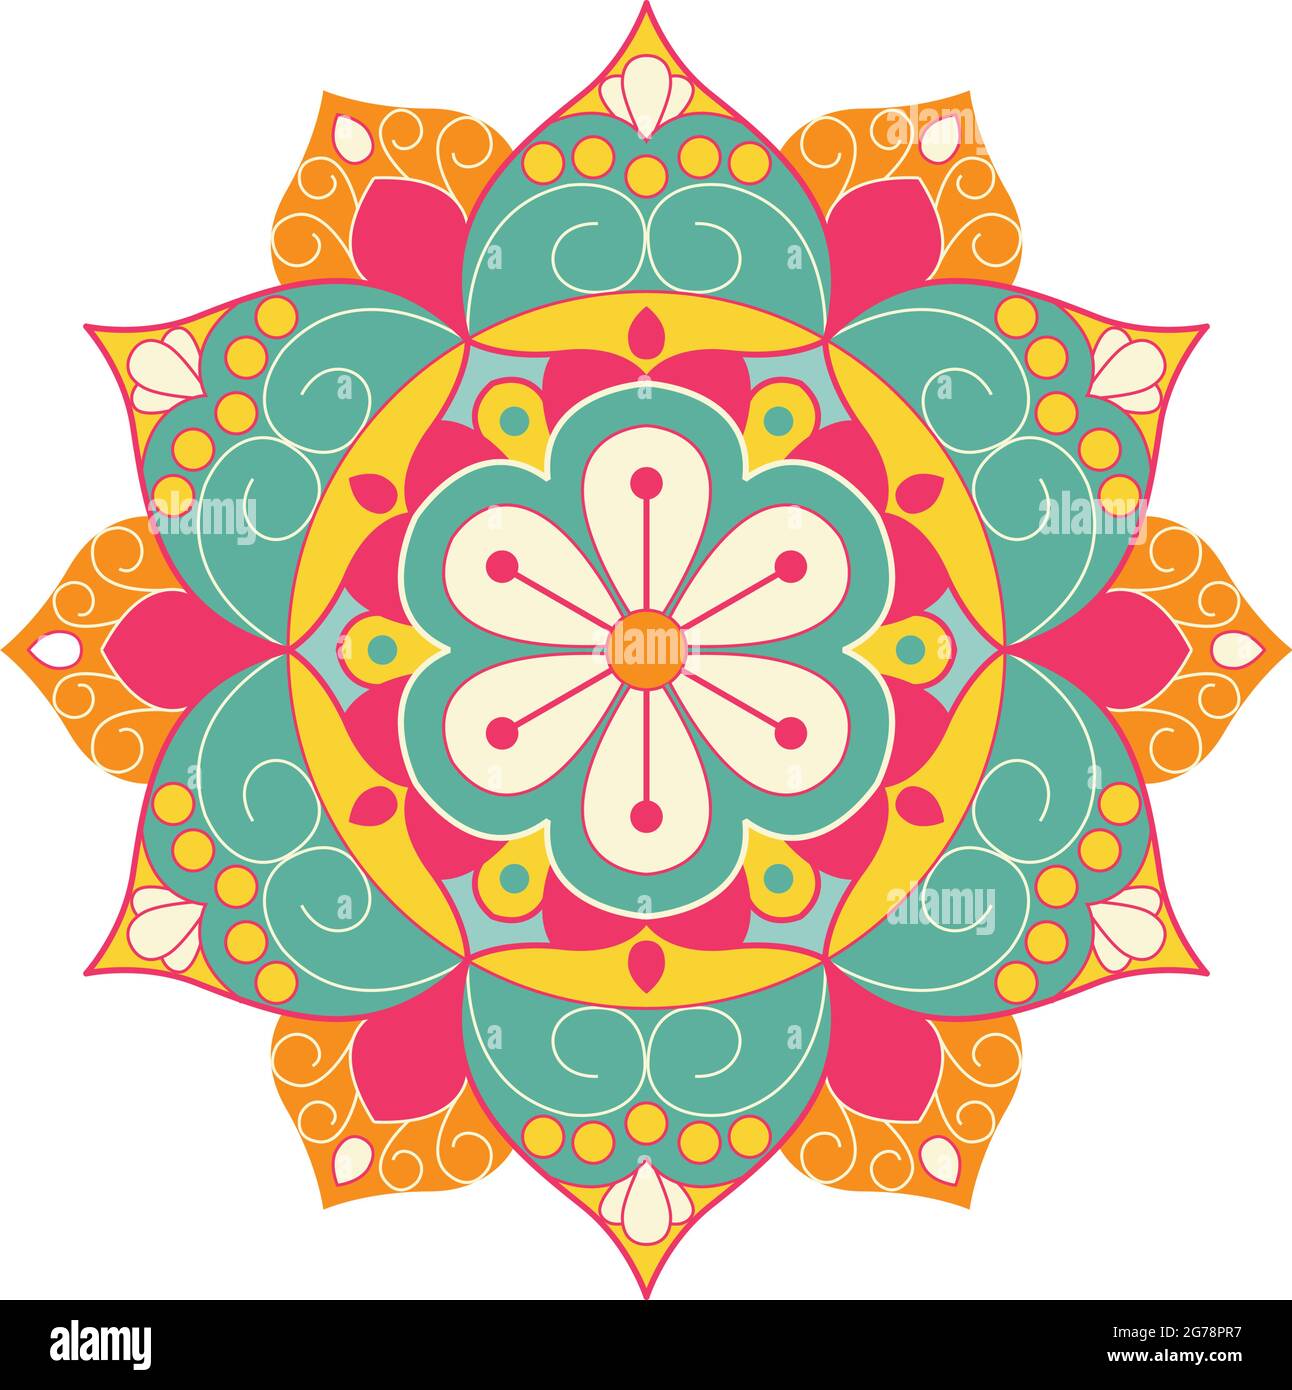 Thiết kế hoa văn Mandala: Dành cho những ai yêu thích sự tinh tế, độc đáo và đầy huyền bí, hãy đến và chiêm ngưỡng những thiết kế hoa văn Mandala đầy sắc màu, với những họa tiết độc đáo và tinh tế. Chắc hẳn bạn sẽ không thể rời mắt khỏi những tác phẩm tuyệt đẹp này.